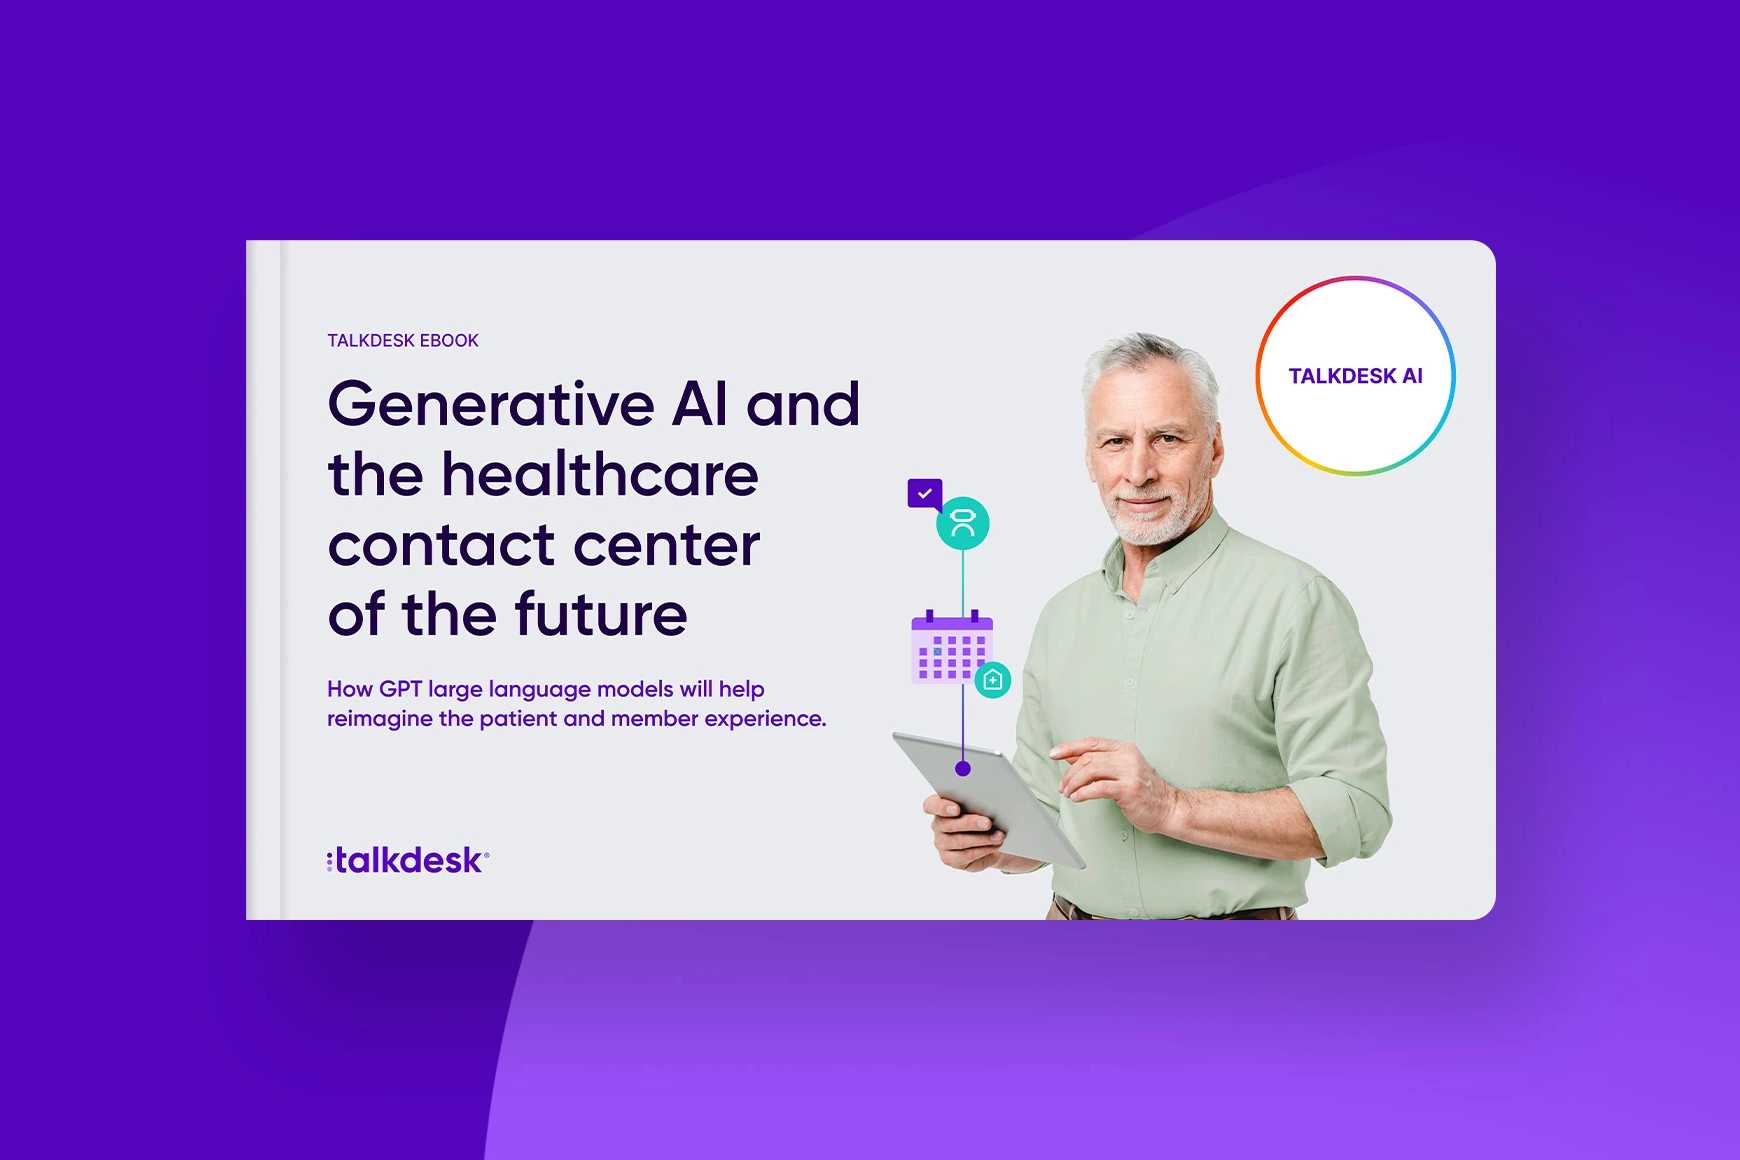 La IA generativa y el contact center del sector sanitario del futuro